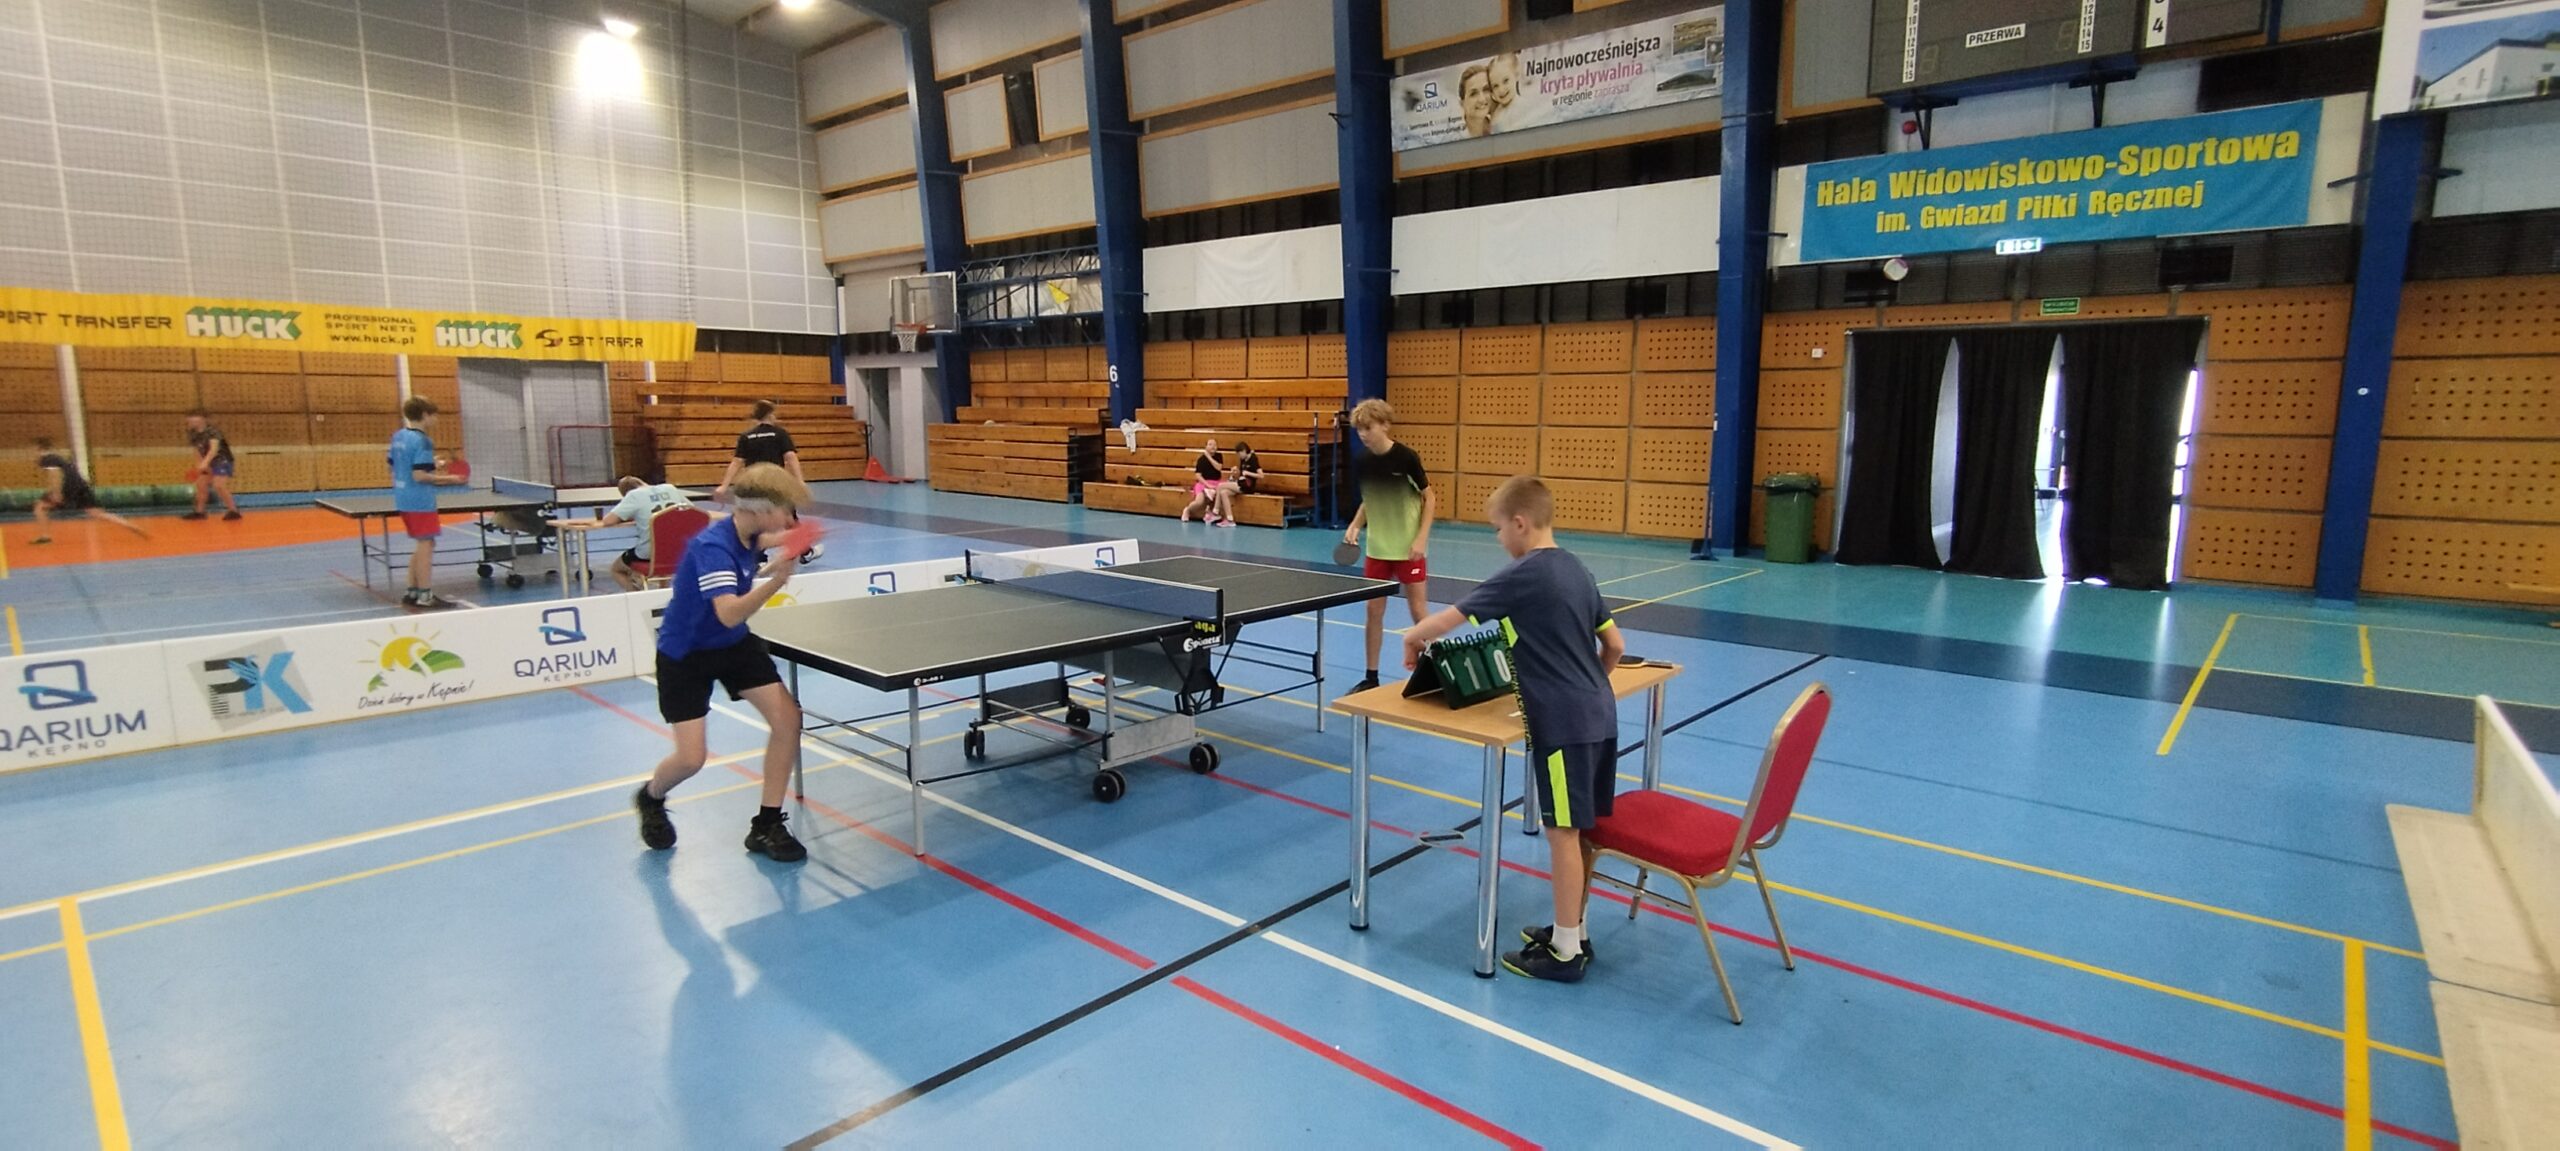 Sport szkolny – tenis stołowy